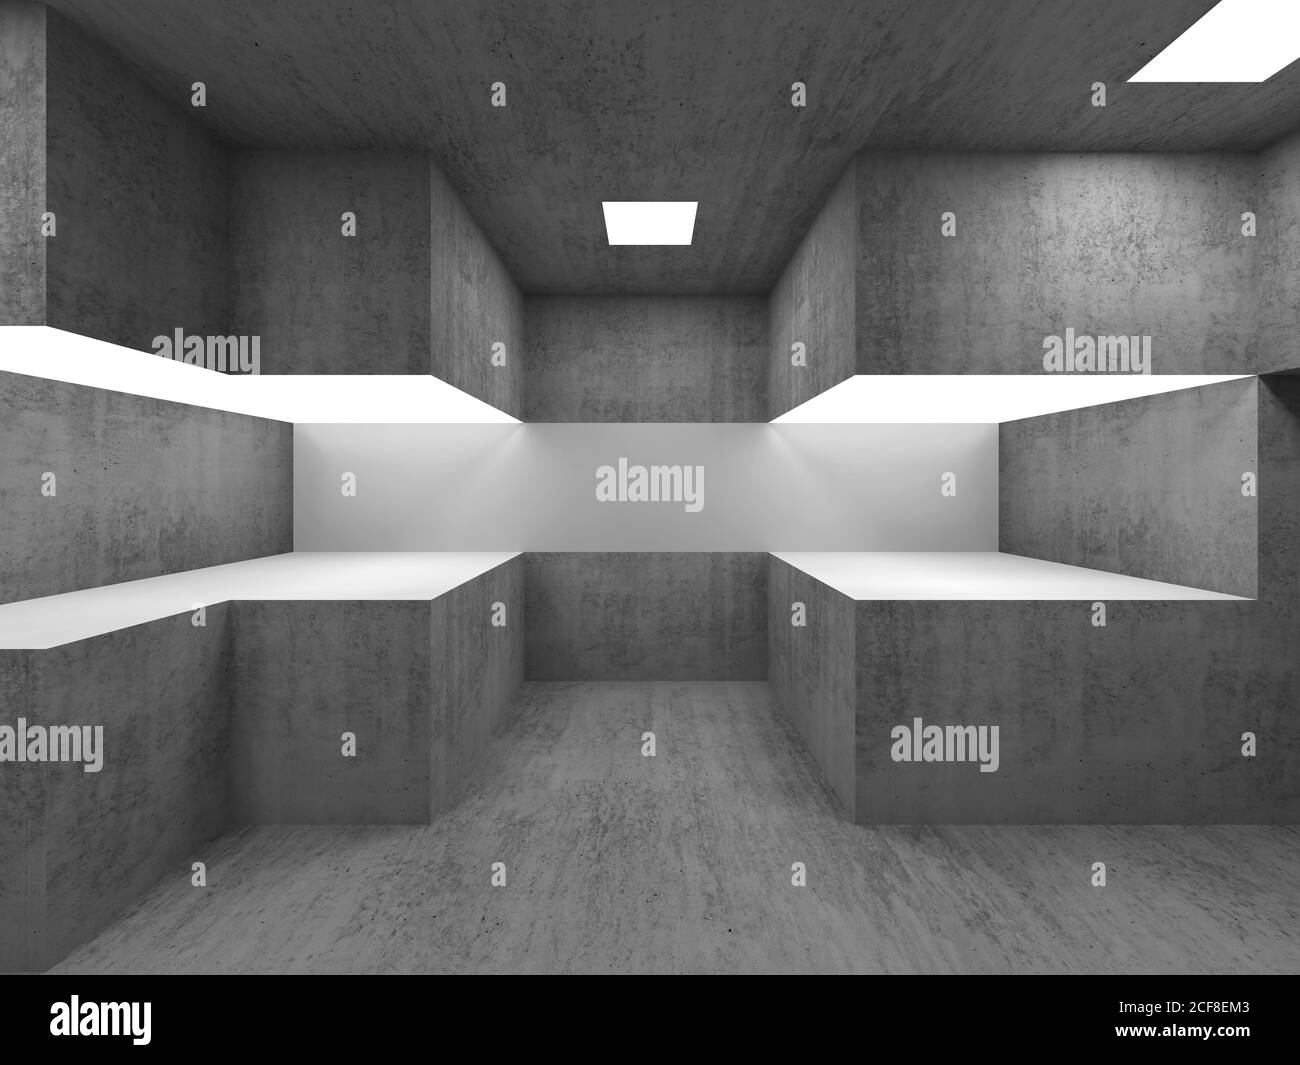 Showroom interno in cemento vuoto con stand espositivi illuminati. illustrazione del rendering 3d Foto Stock